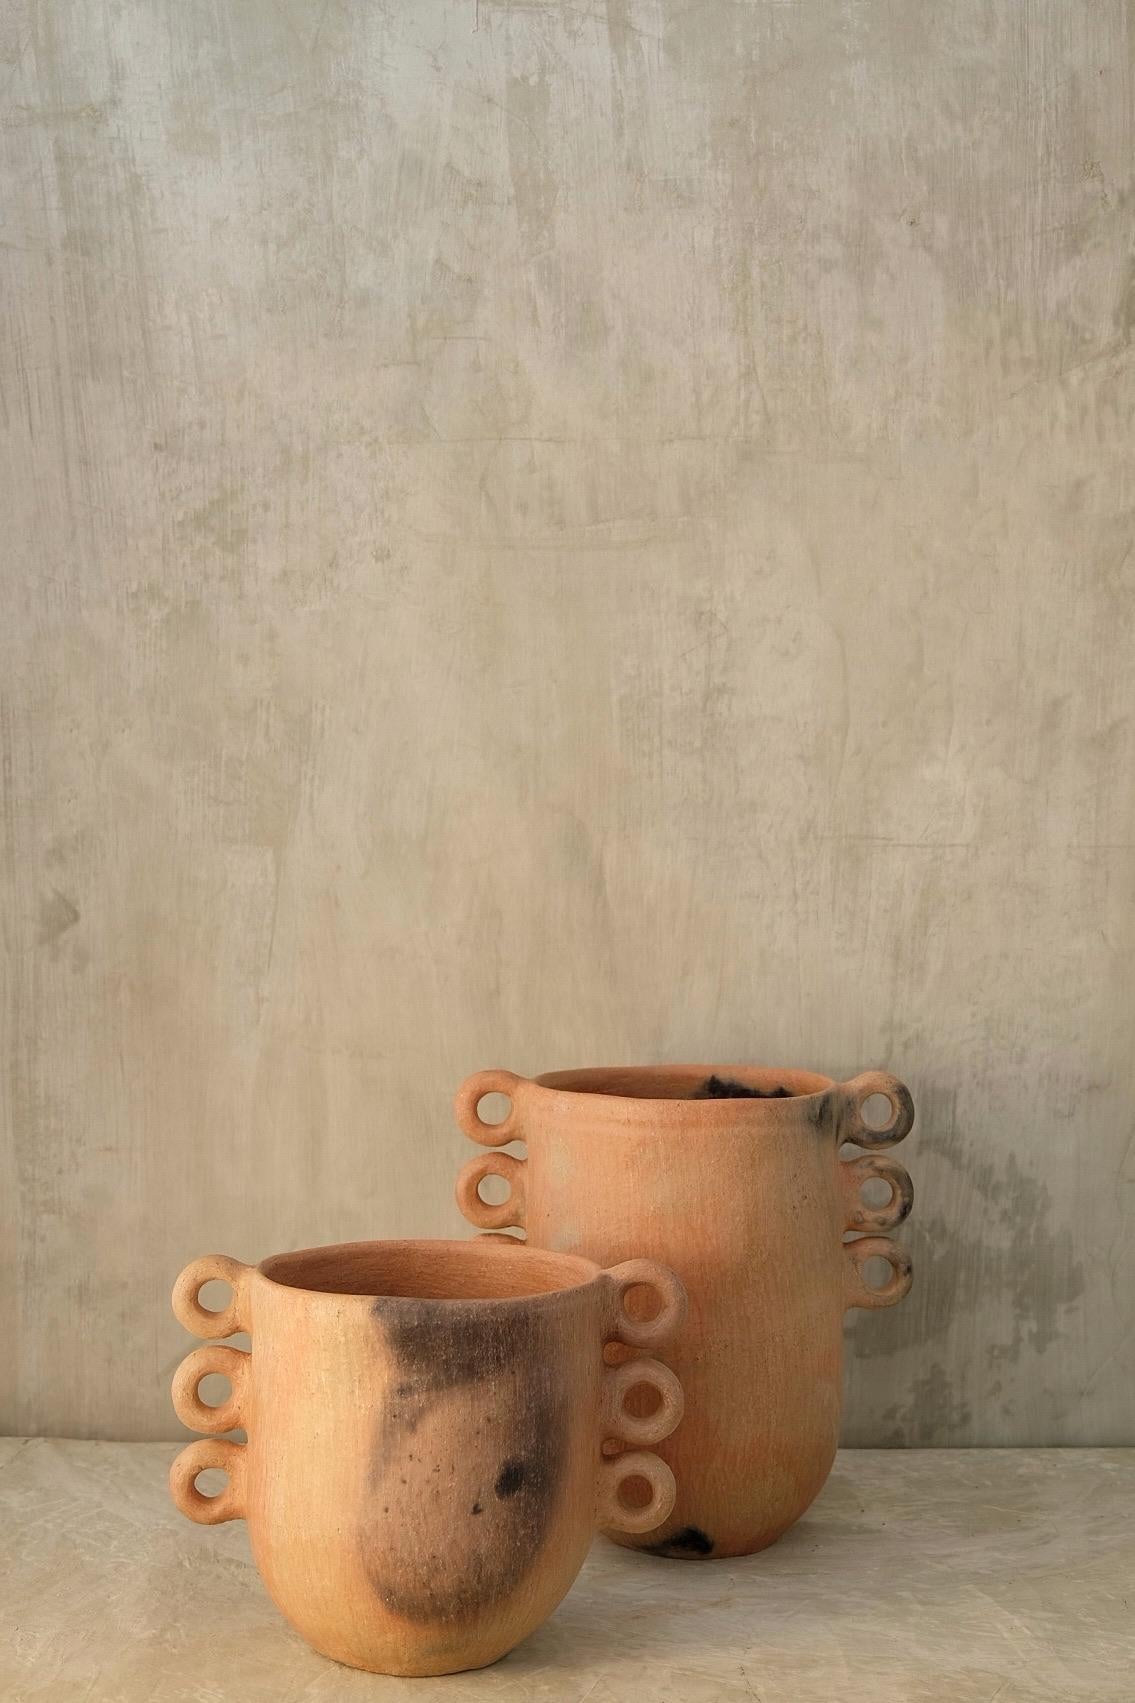 Tierra Caliente-Vase von Onora
Abmessungen: 
D 20 x H 30 cm
D 20 x H 20 cm 
MATERIALIEN: Lehm

Handgeformter Ton, überzogen mit einem Schlicker auf Mineralbasis und poliert mit einem Quarzstein. 

Wir sind eine mexikanische Marke, die in